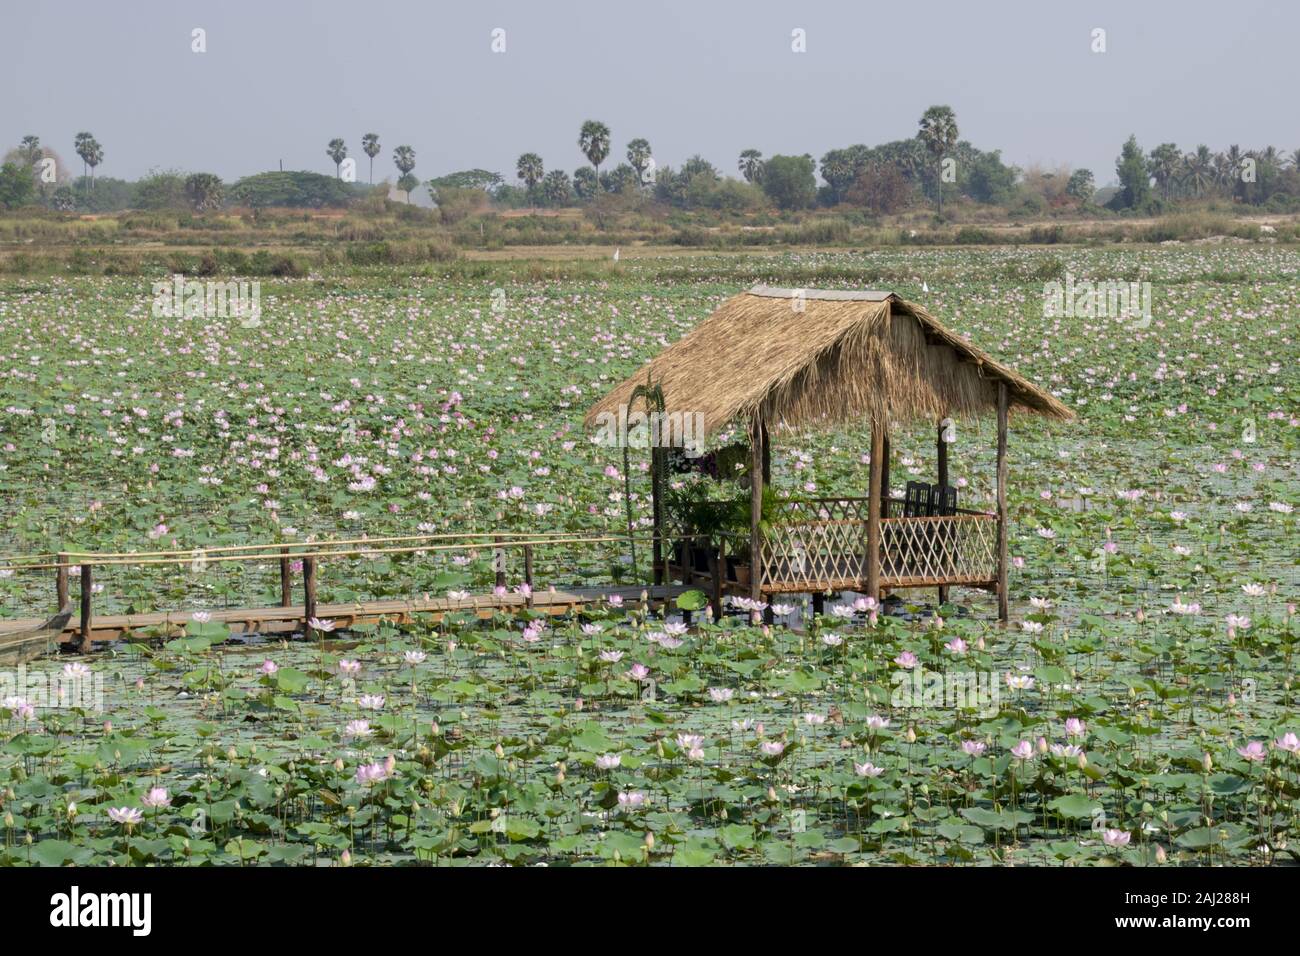 Le Cambodge, Tonle Sap - Mars 2016 : cabane rustique se trouve dans un lac rempli de fleurs de lotus. Banque D'Images